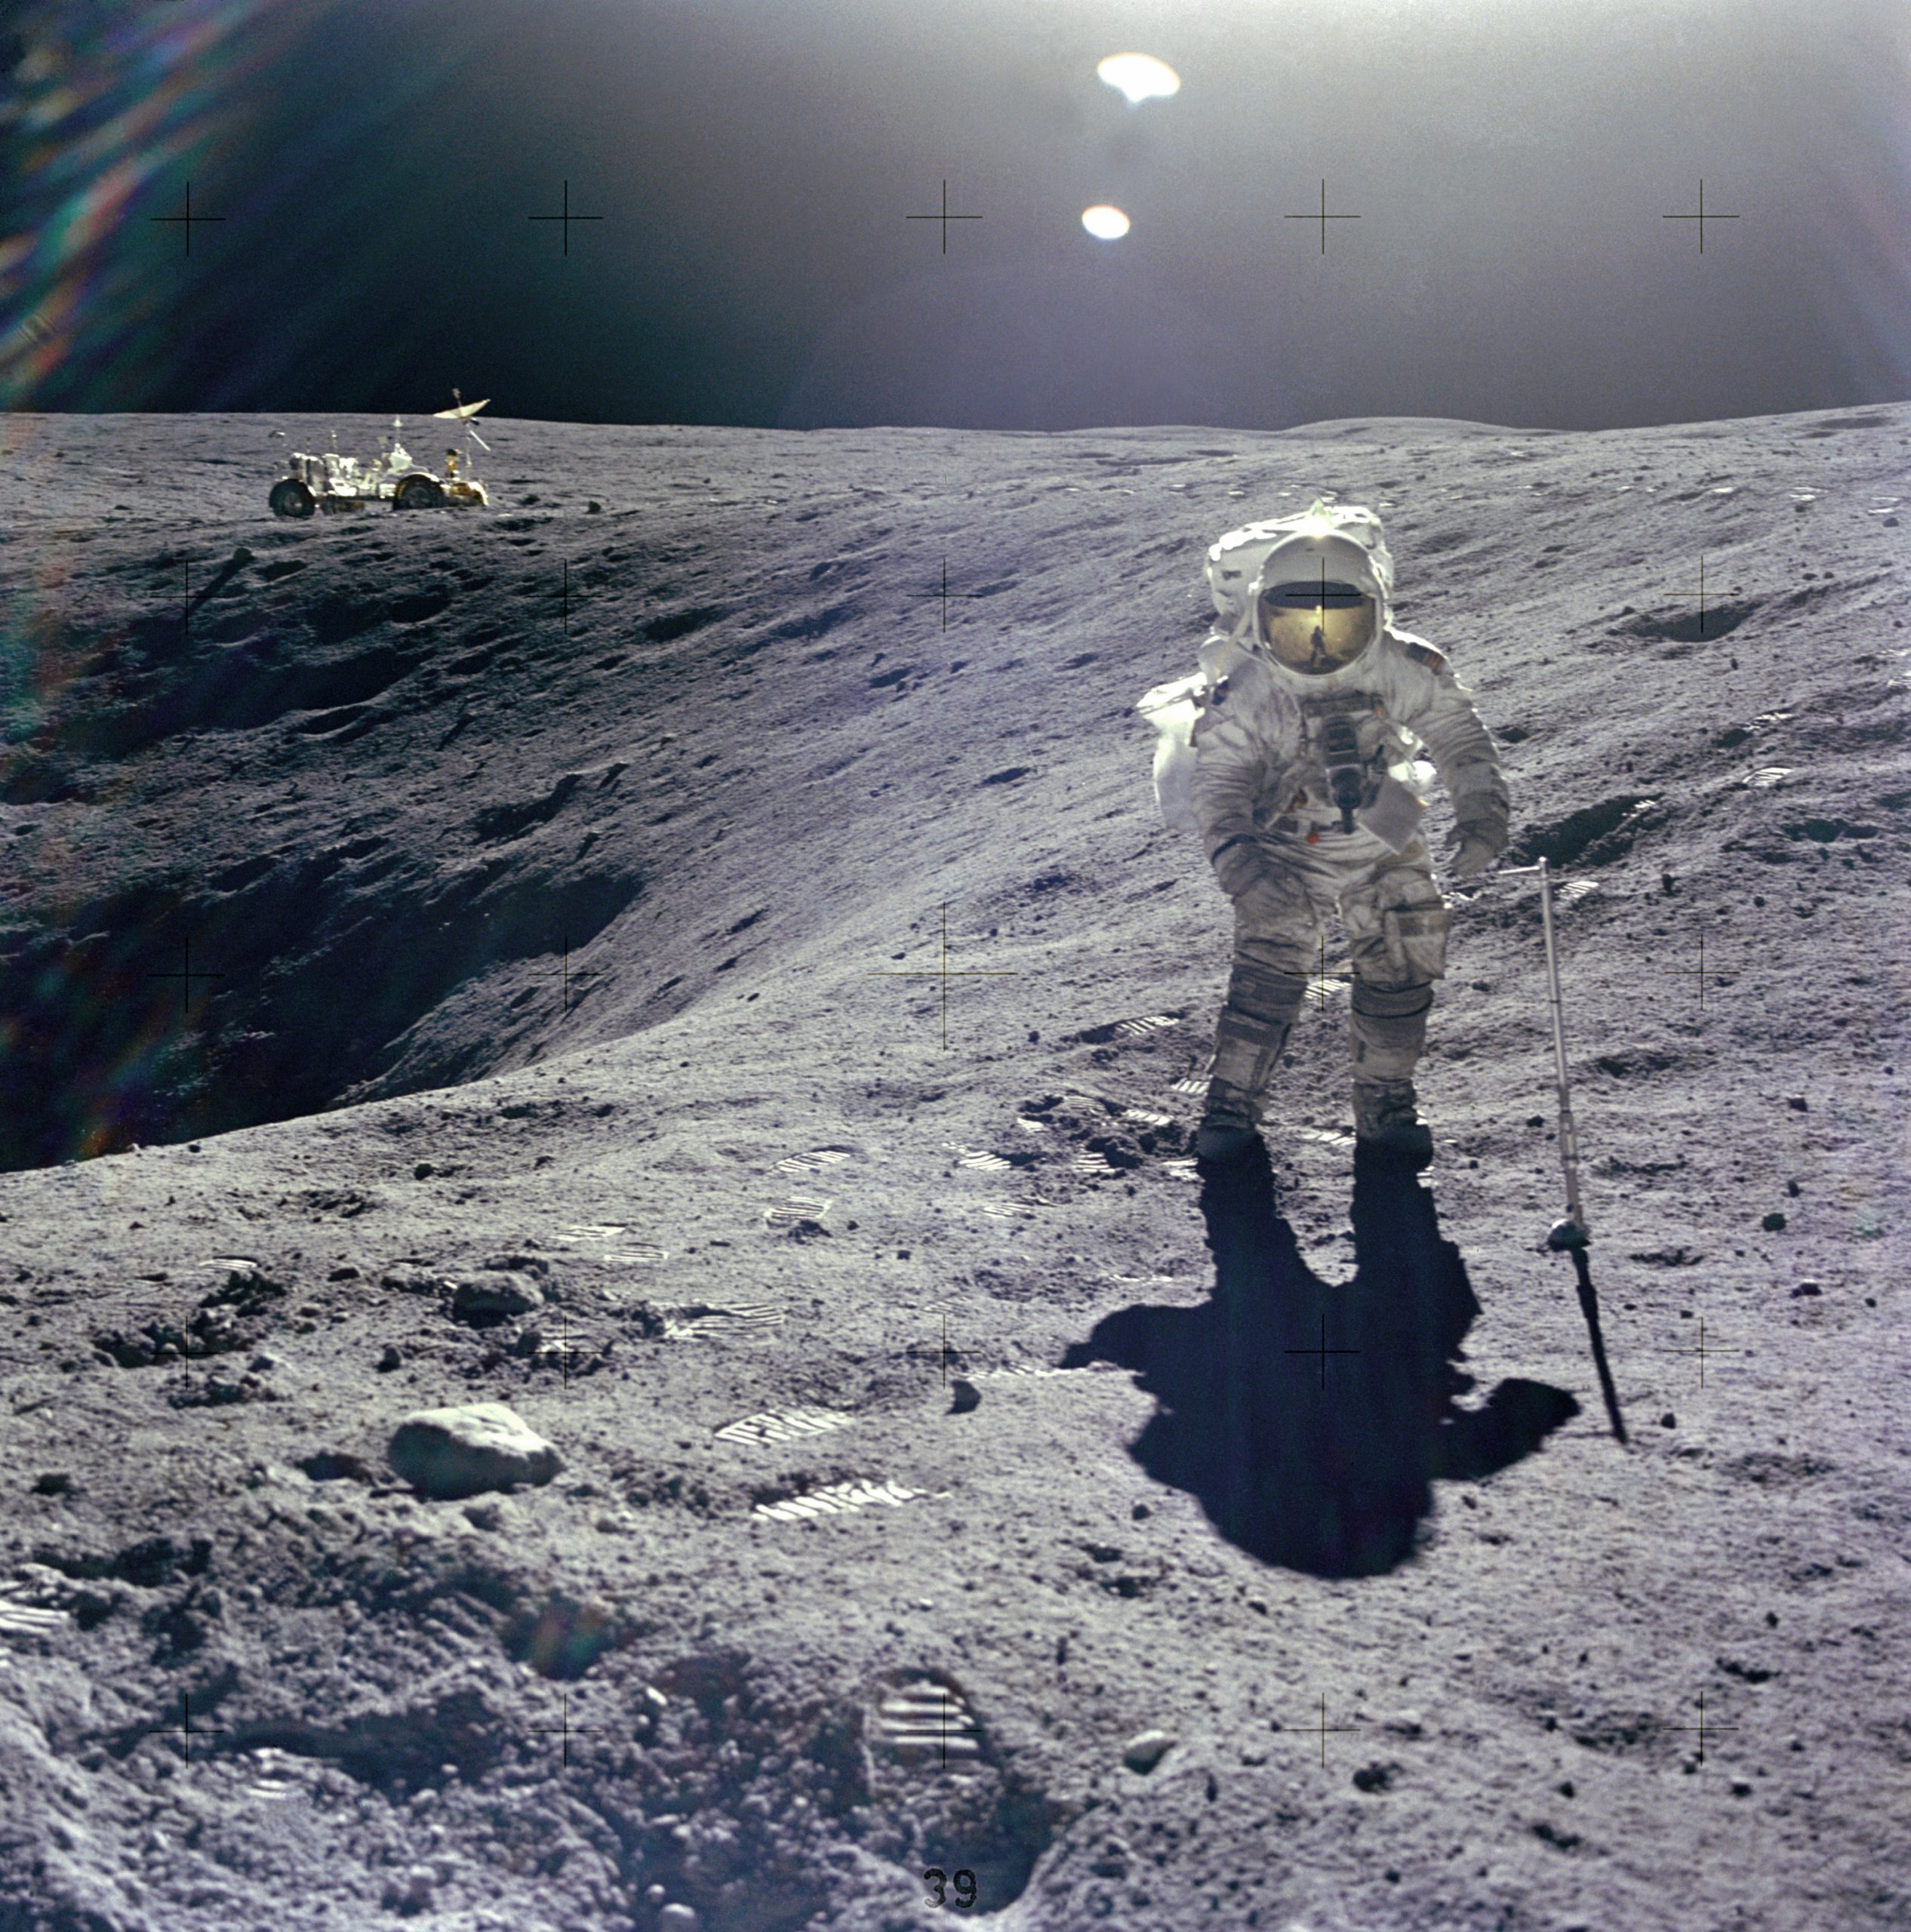 ¿Qué diferencia al Apolo 16 de las misiones anteriores?